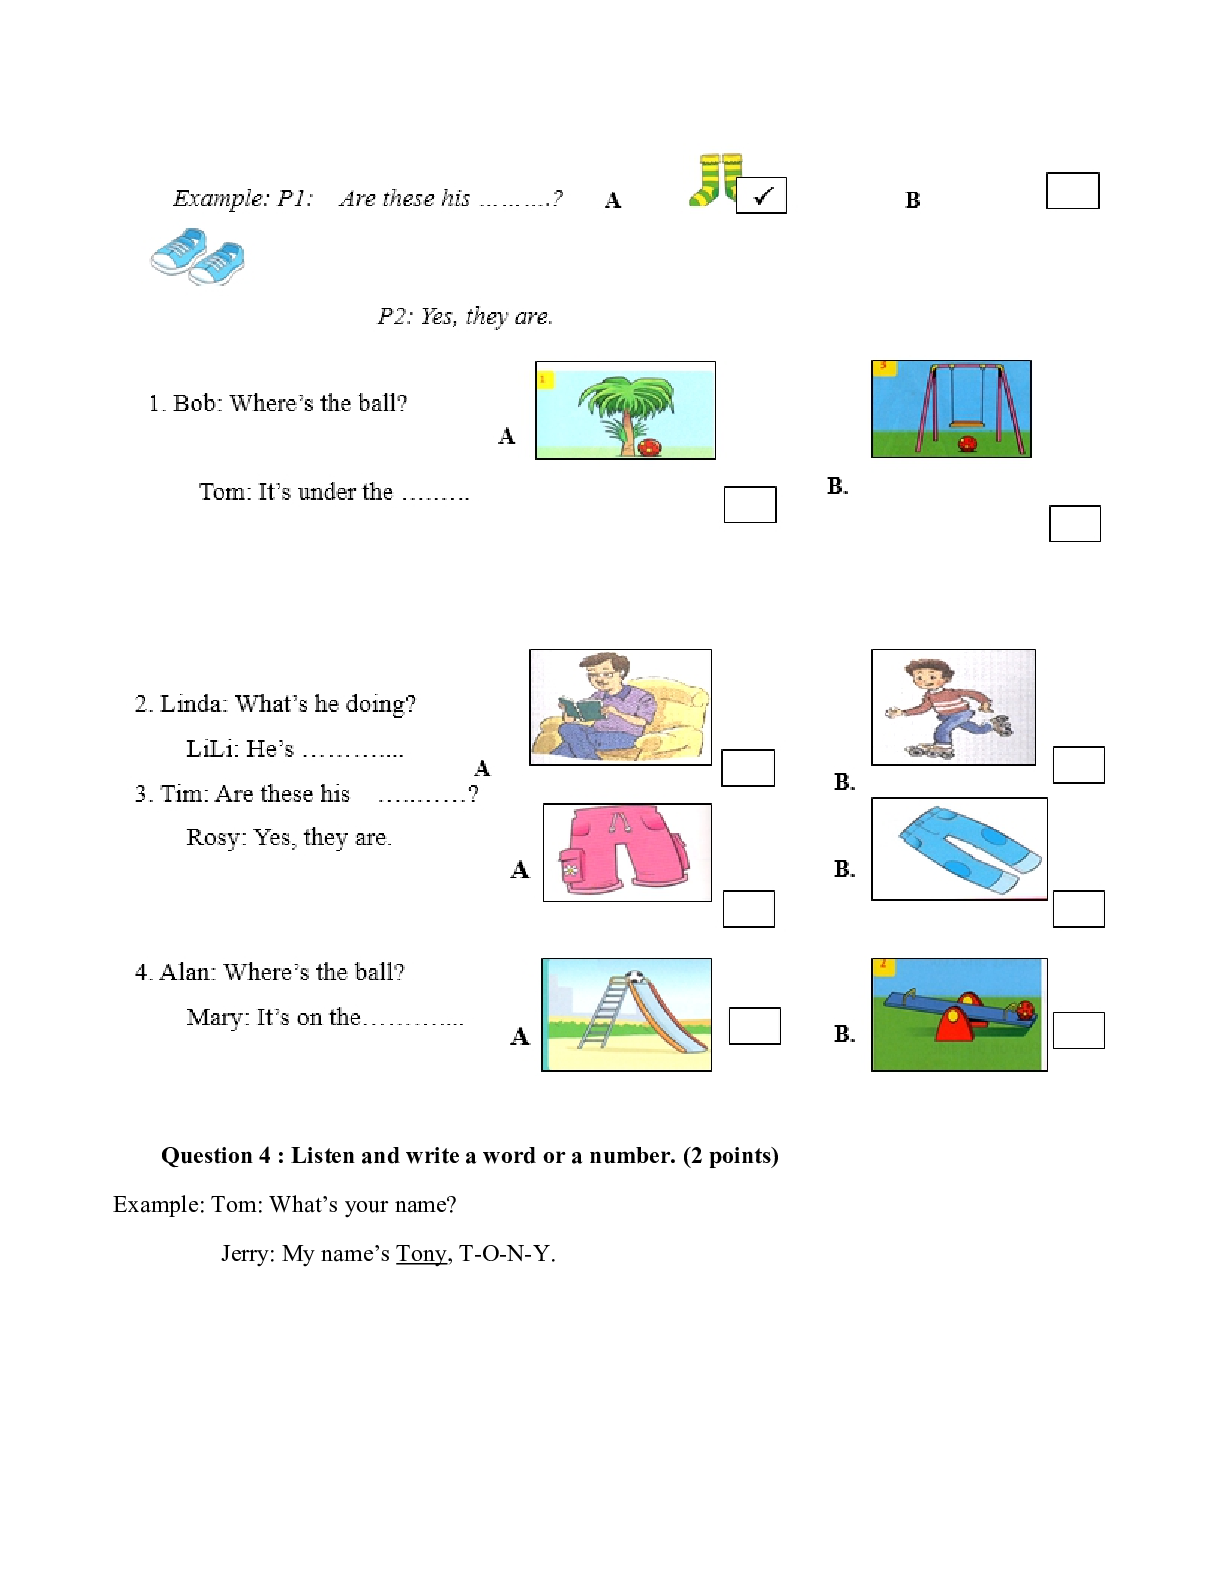 Bài tập ôn hè môn Tiếng Anh lớp 3 lên lớp 4 (trang 2)